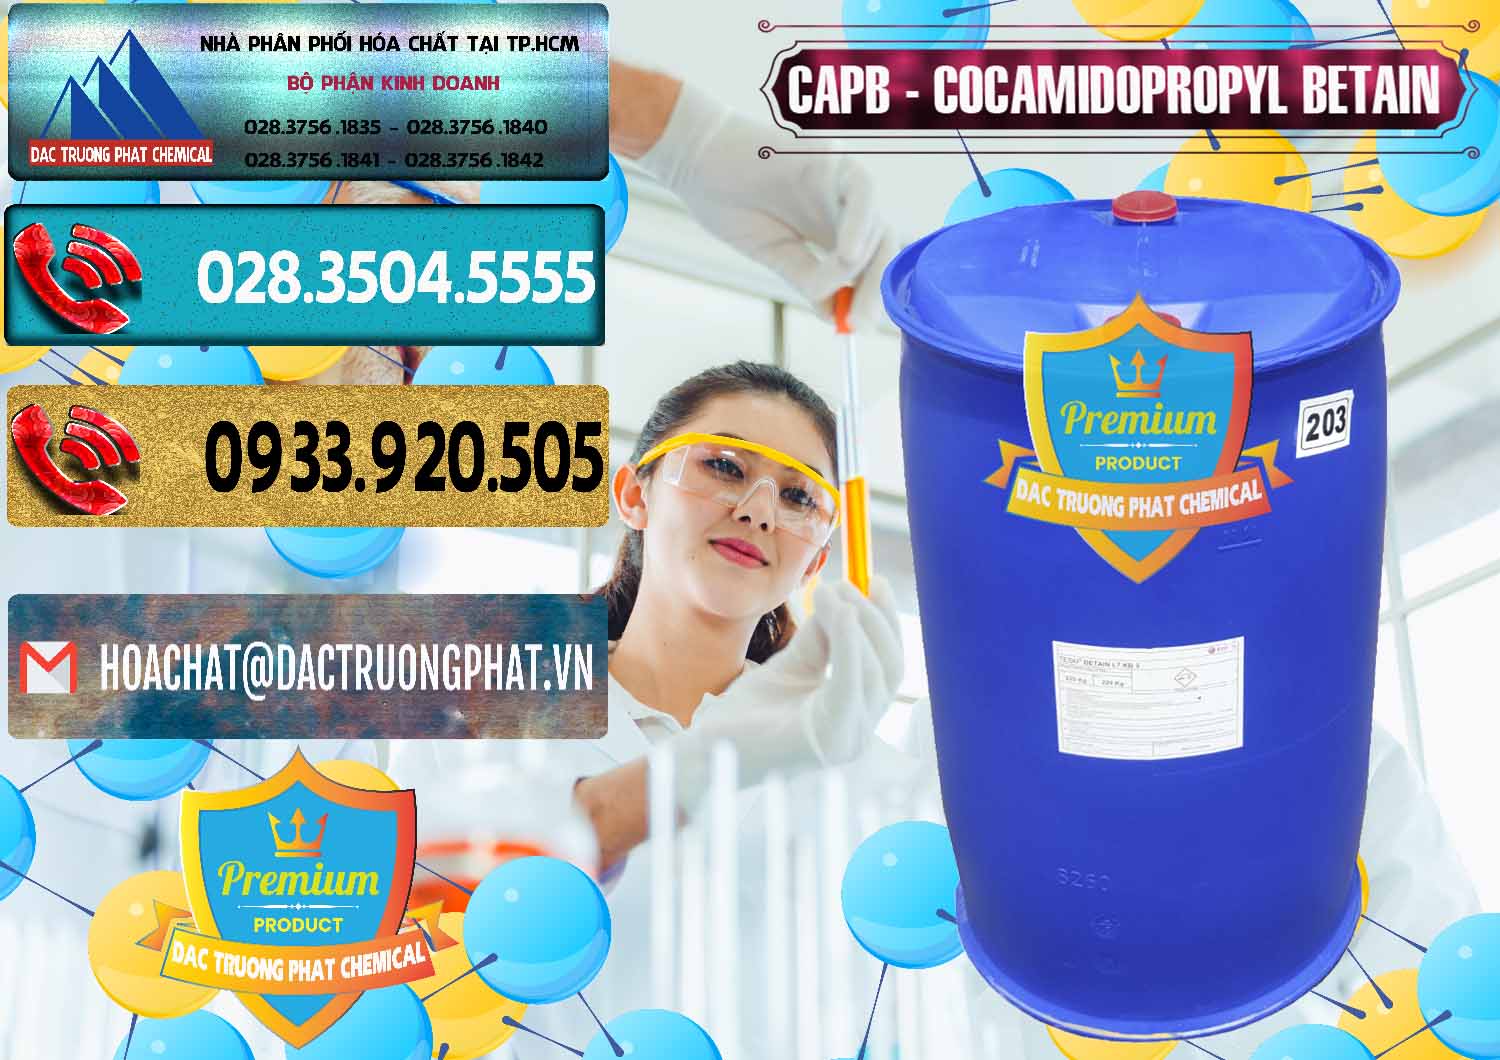 Chuyên phân phối và bán Cocamidopropyl Betaine - CAPB Tego Indonesia - 0327 - Cty chuyên bán ( cung cấp ) hóa chất tại TP.HCM - hoachatdetnhuom.com